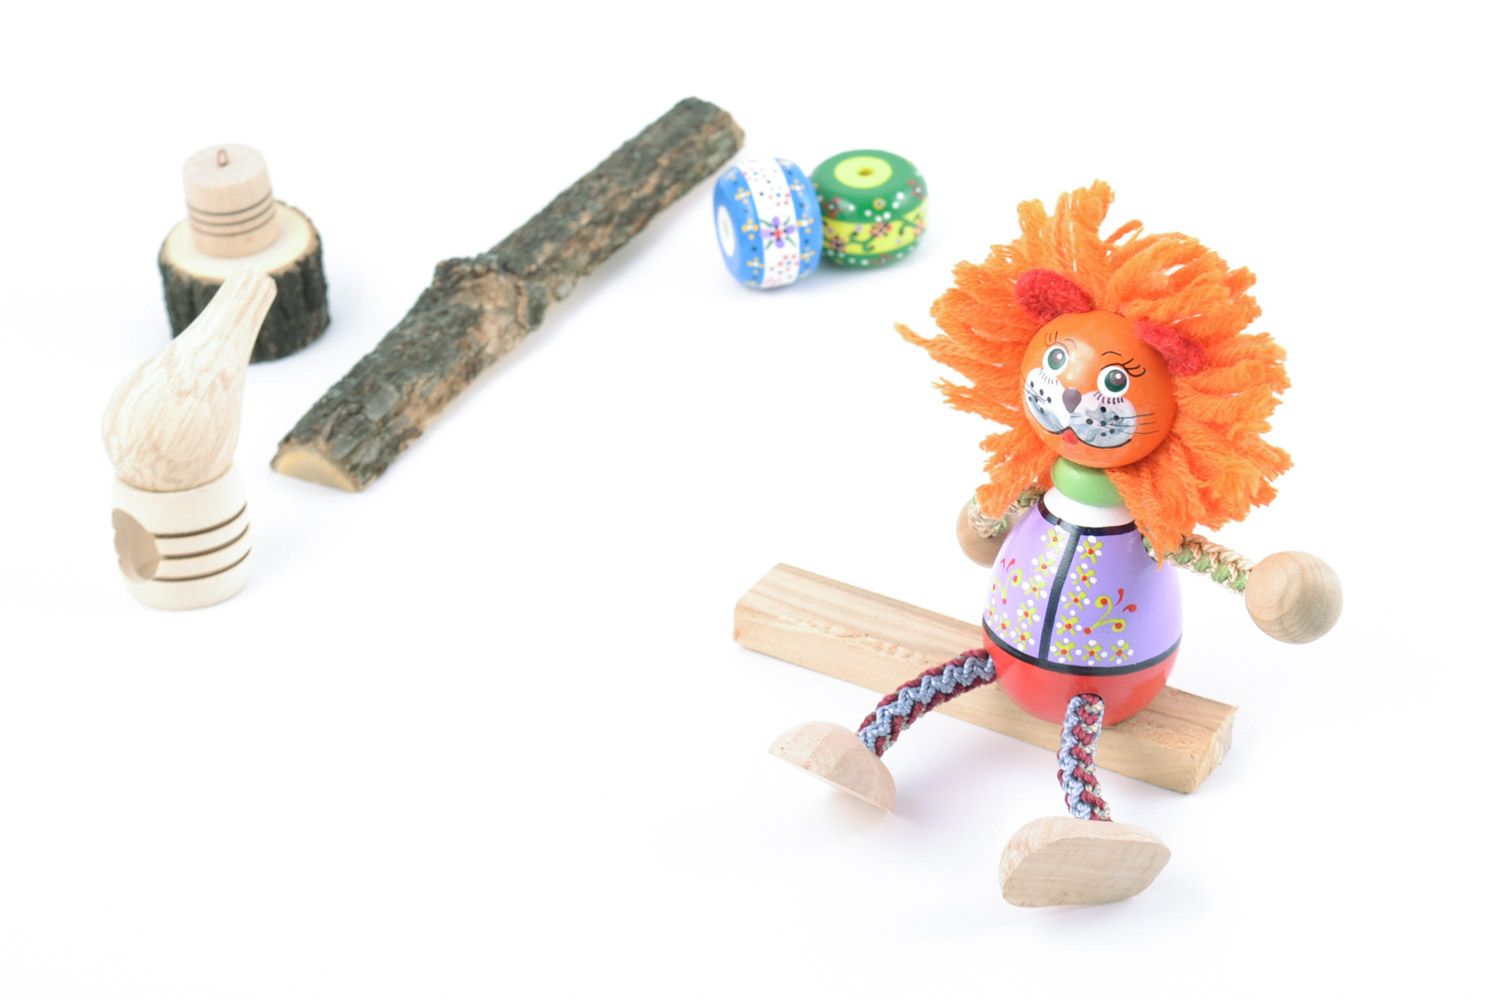 Jouet en bois original fait main peint figurine décorative pour enfant Lion photo 1